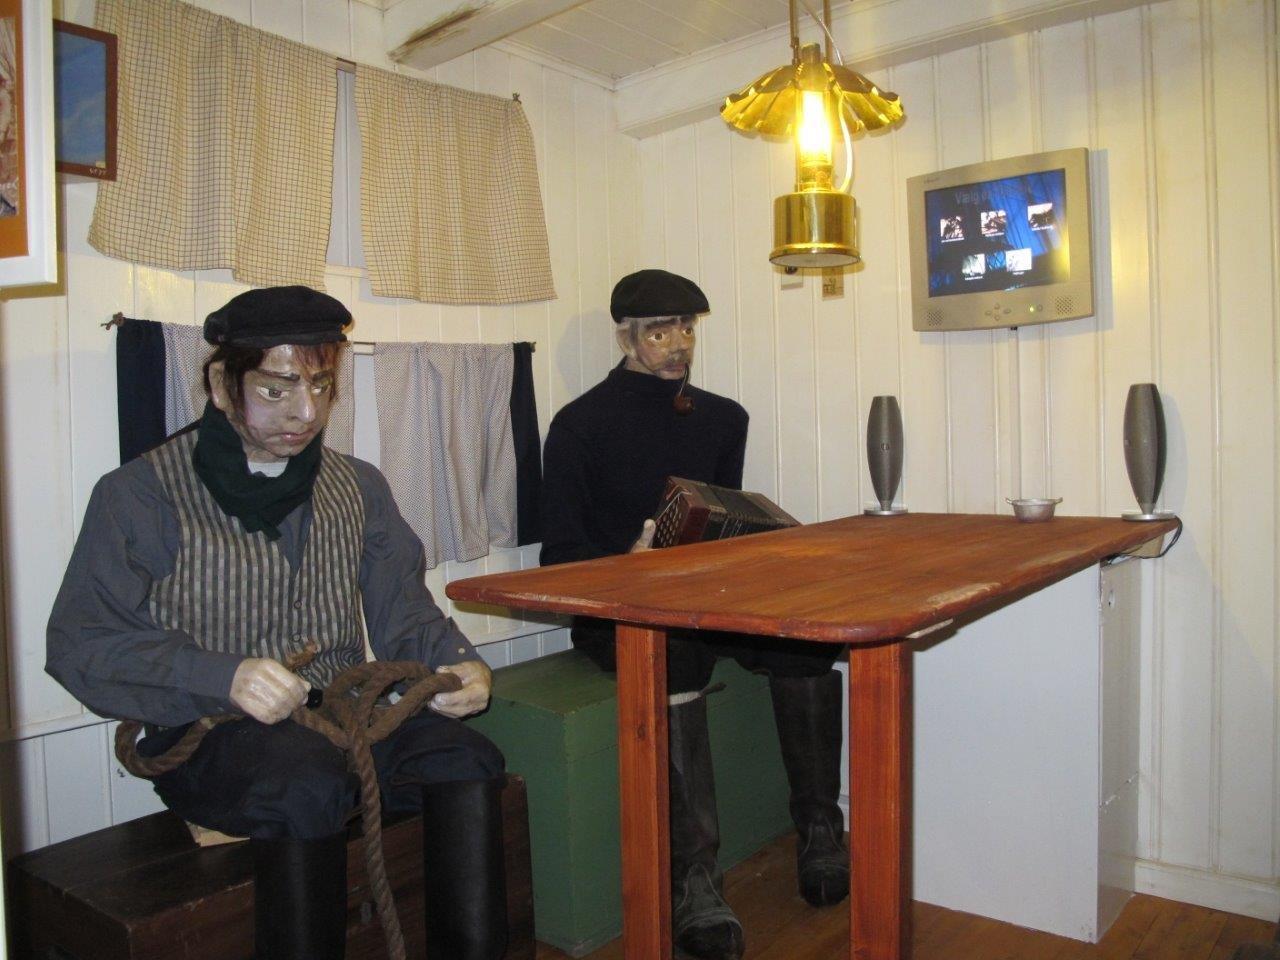 Sømandsliv - Marstal Søfartsmuseum